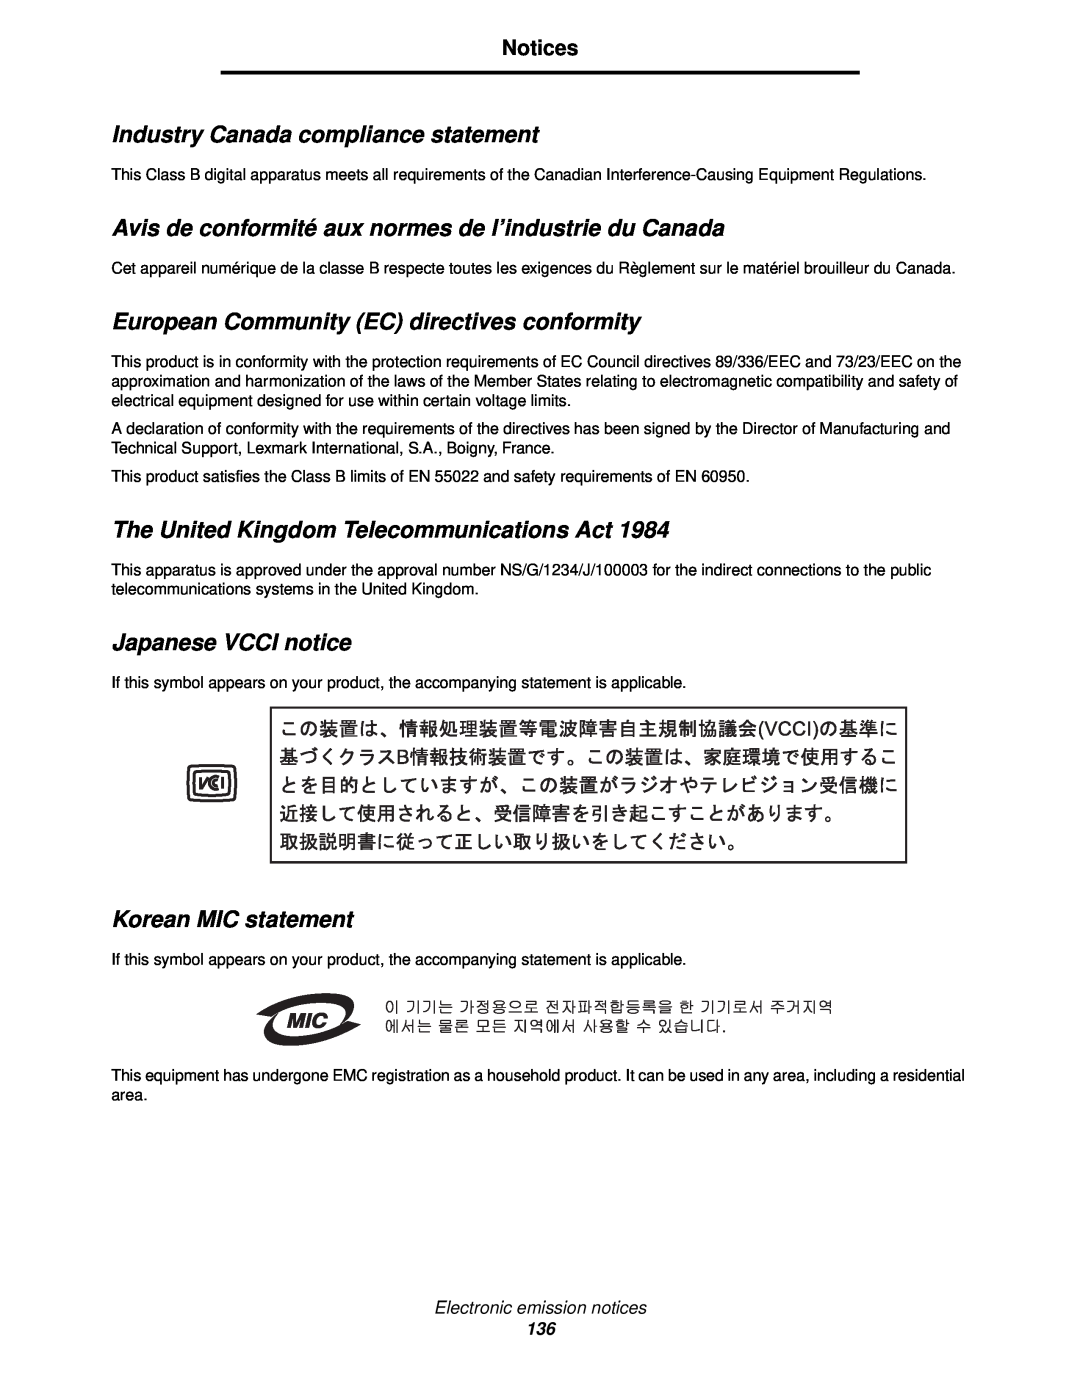 Lexmark C520, C524 Industry Canada compliance statement, Avis de conformité aux normes de l’industrie du Canada, Notices 